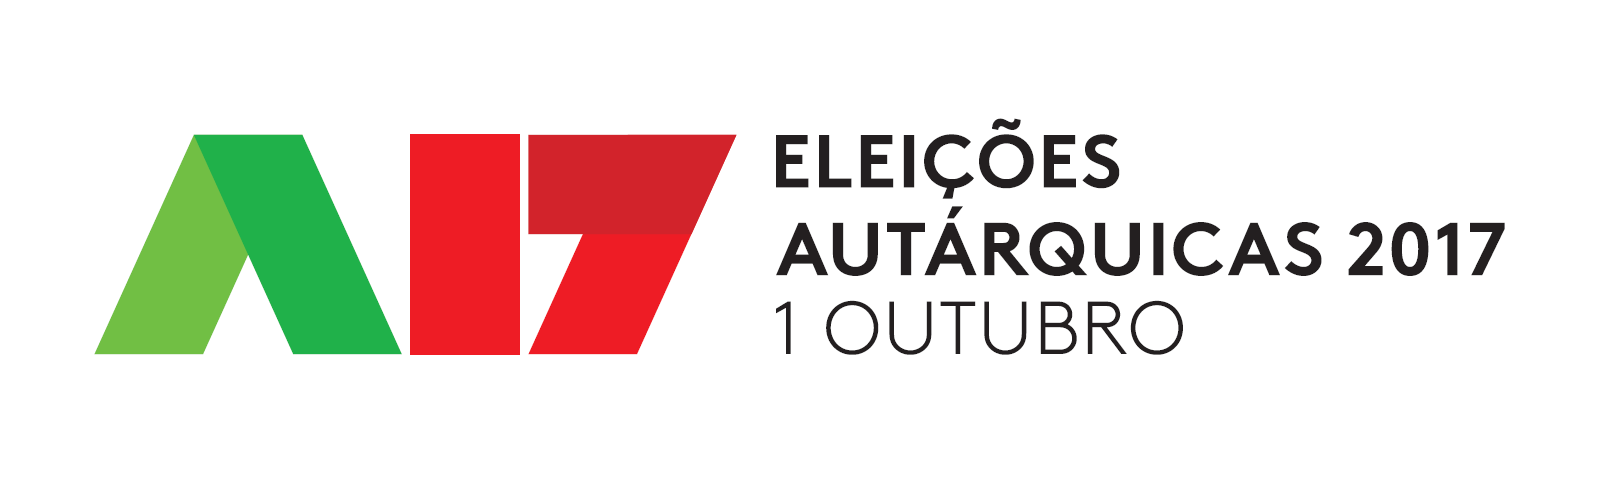 Logotipo-Autarquicas-2017.bmp